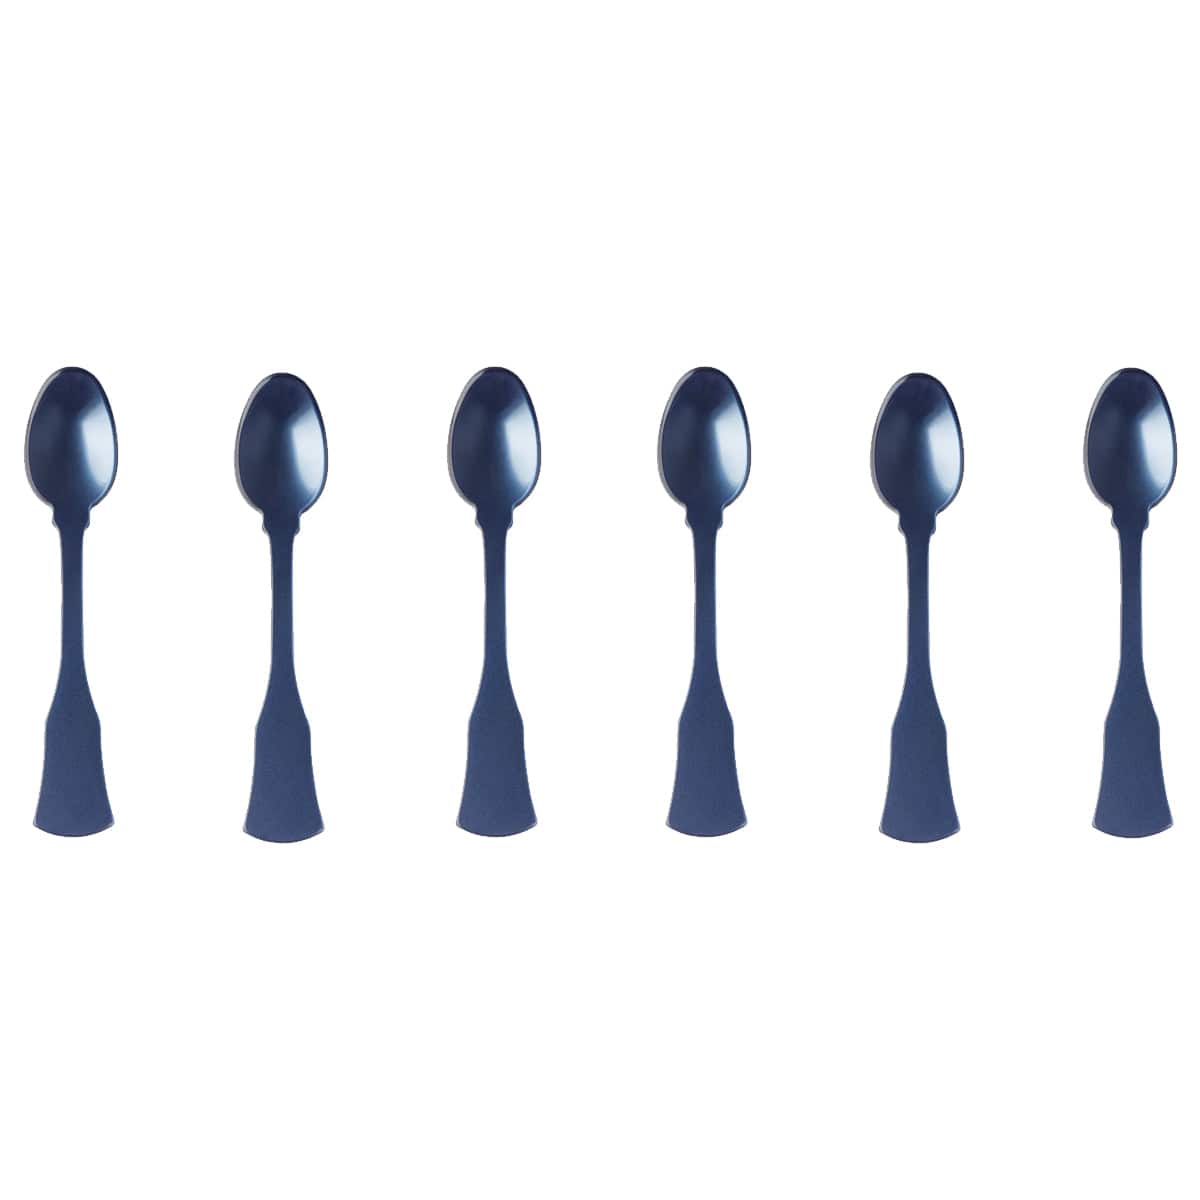 Sabre Honorine 6-Piece Demi-Tasse Spoon Set, Steel Blue - Kitchen Universe